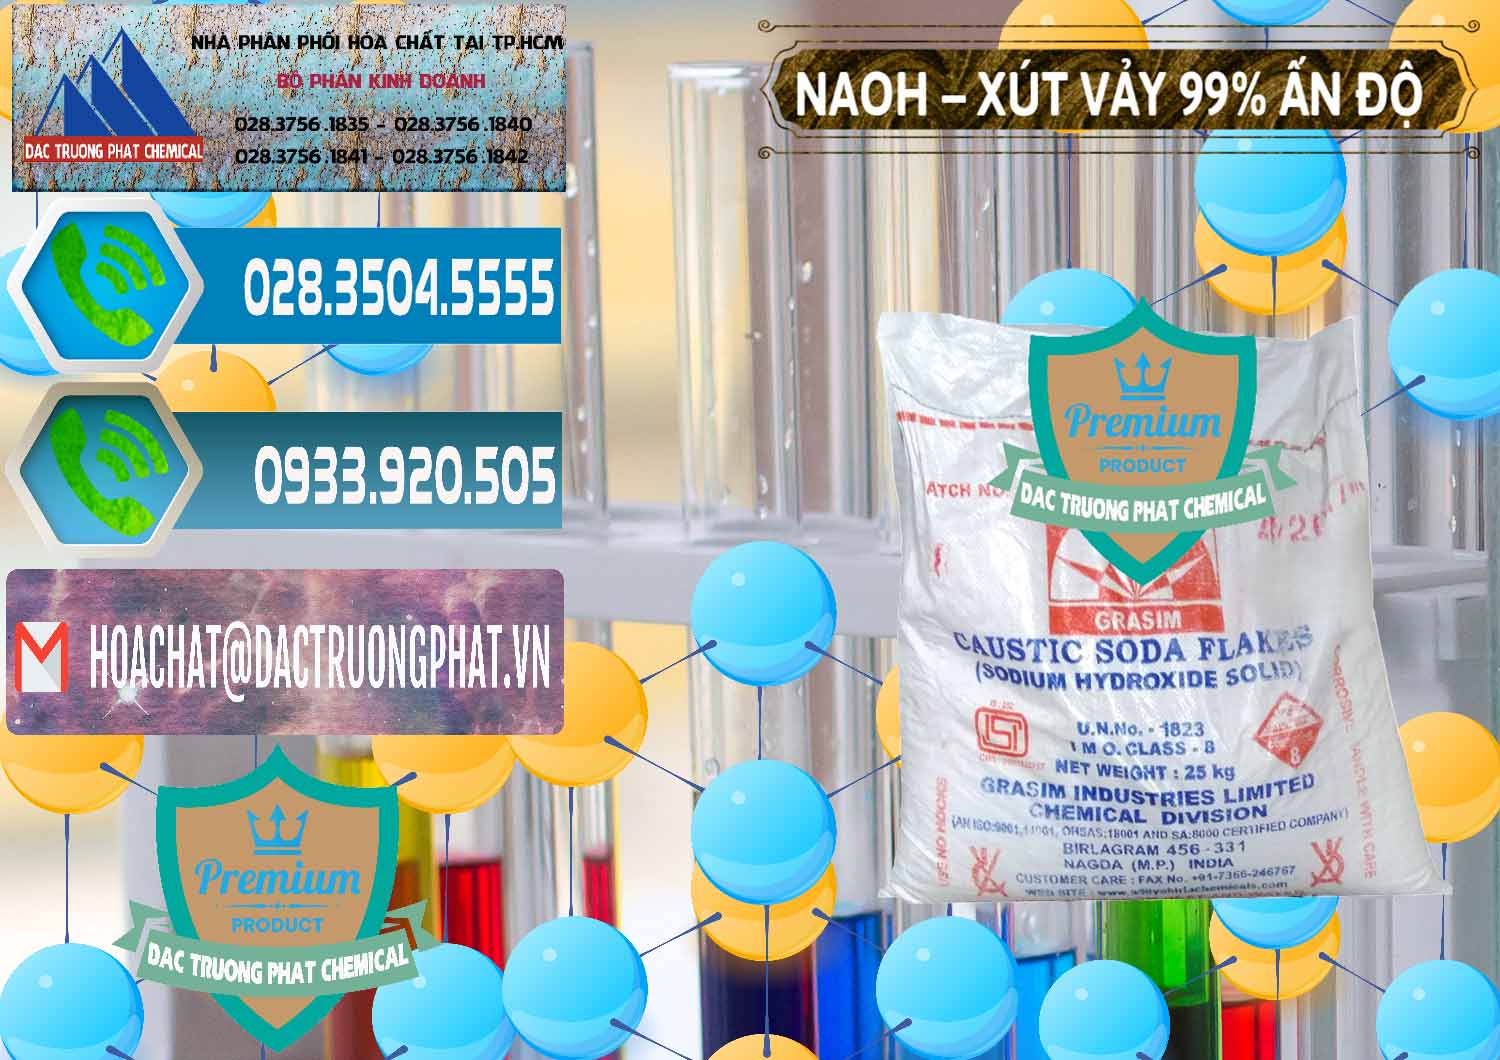 Đơn vị bán _ phân phối Xút Vảy - NaOH Vảy 99% Aditya Birla Grasim Ấn Độ India - 0171 - Đơn vị chuyên kinh doanh ( cung cấp ) hóa chất tại TP.HCM - congtyhoachat.net